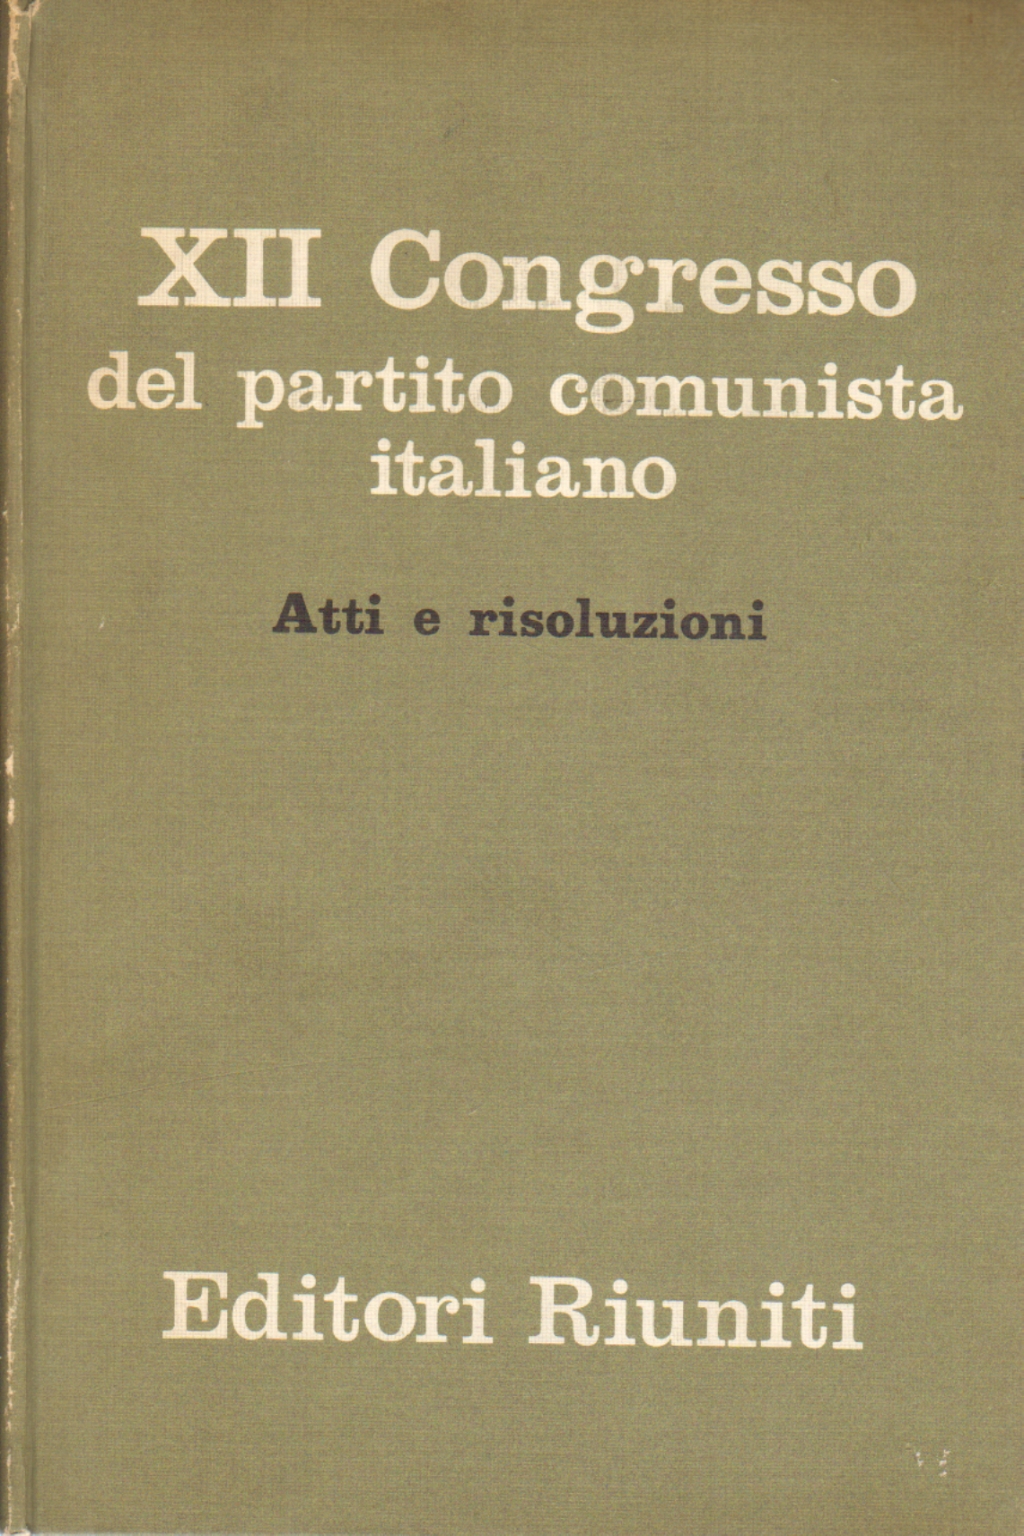 XII Congresso del partito comunista italiano, AA.VV.